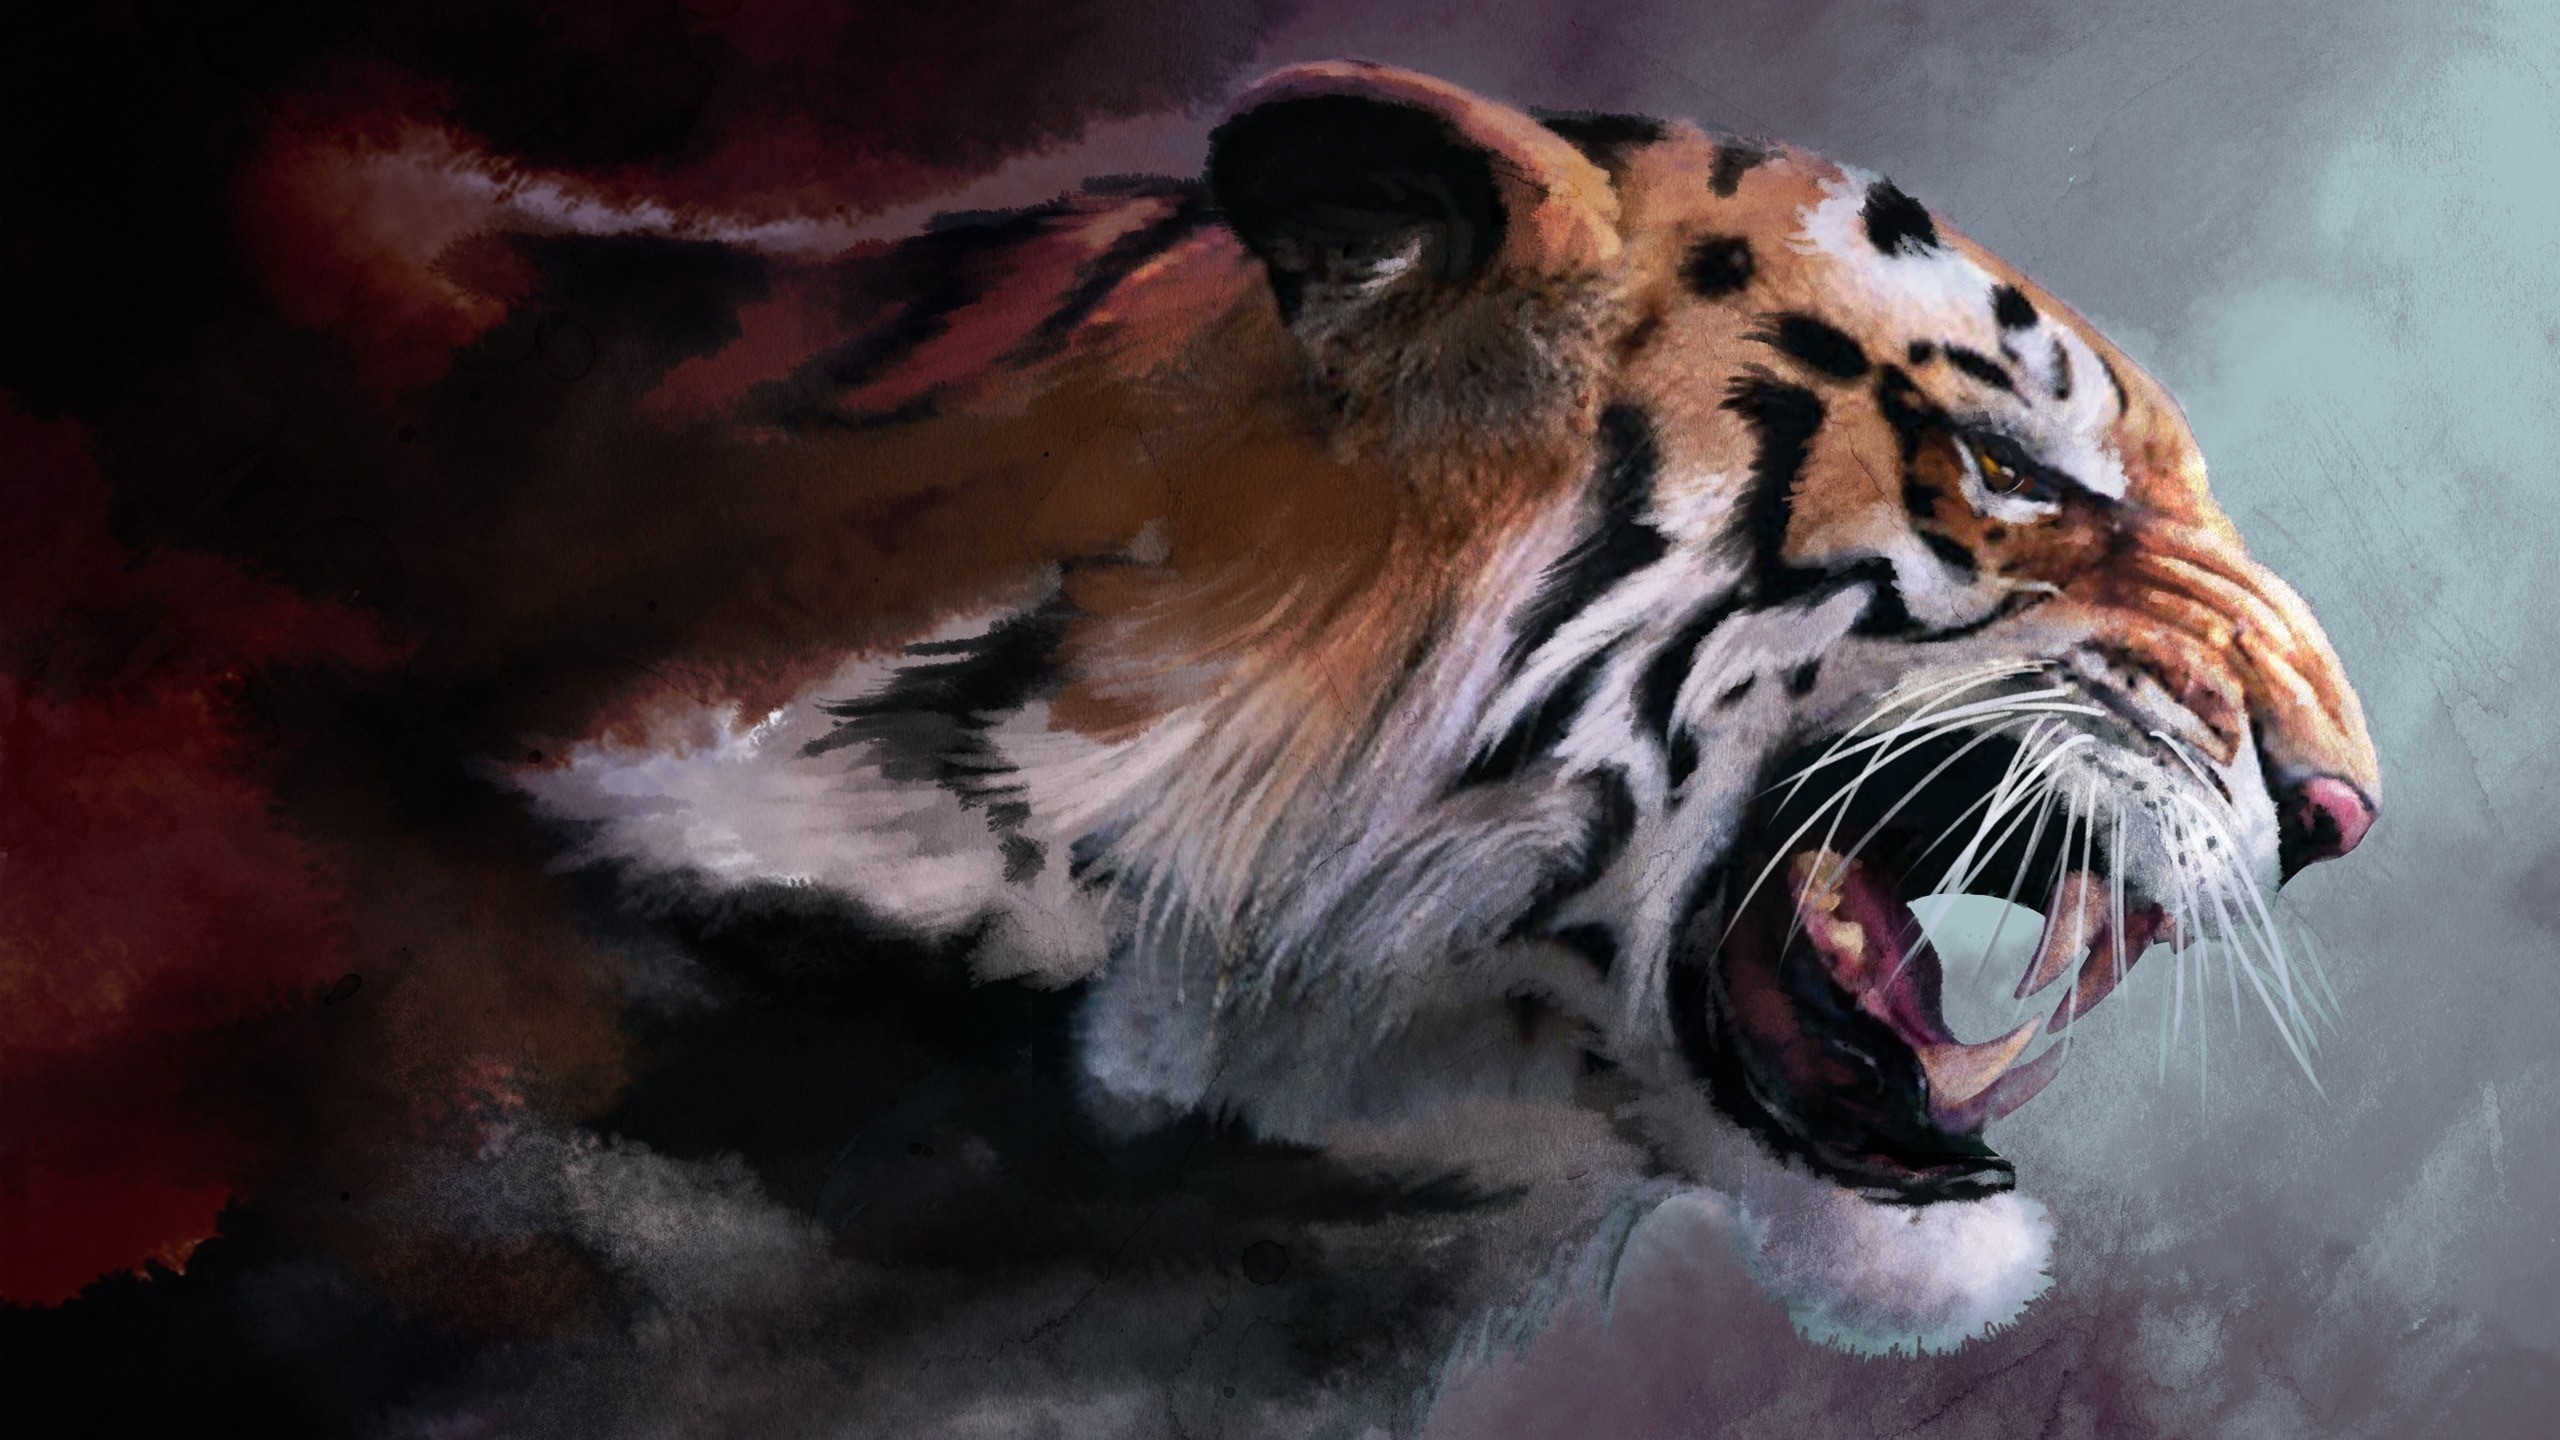 General 2560x1440 tiger artwork animals big cats mammals digital art closeup